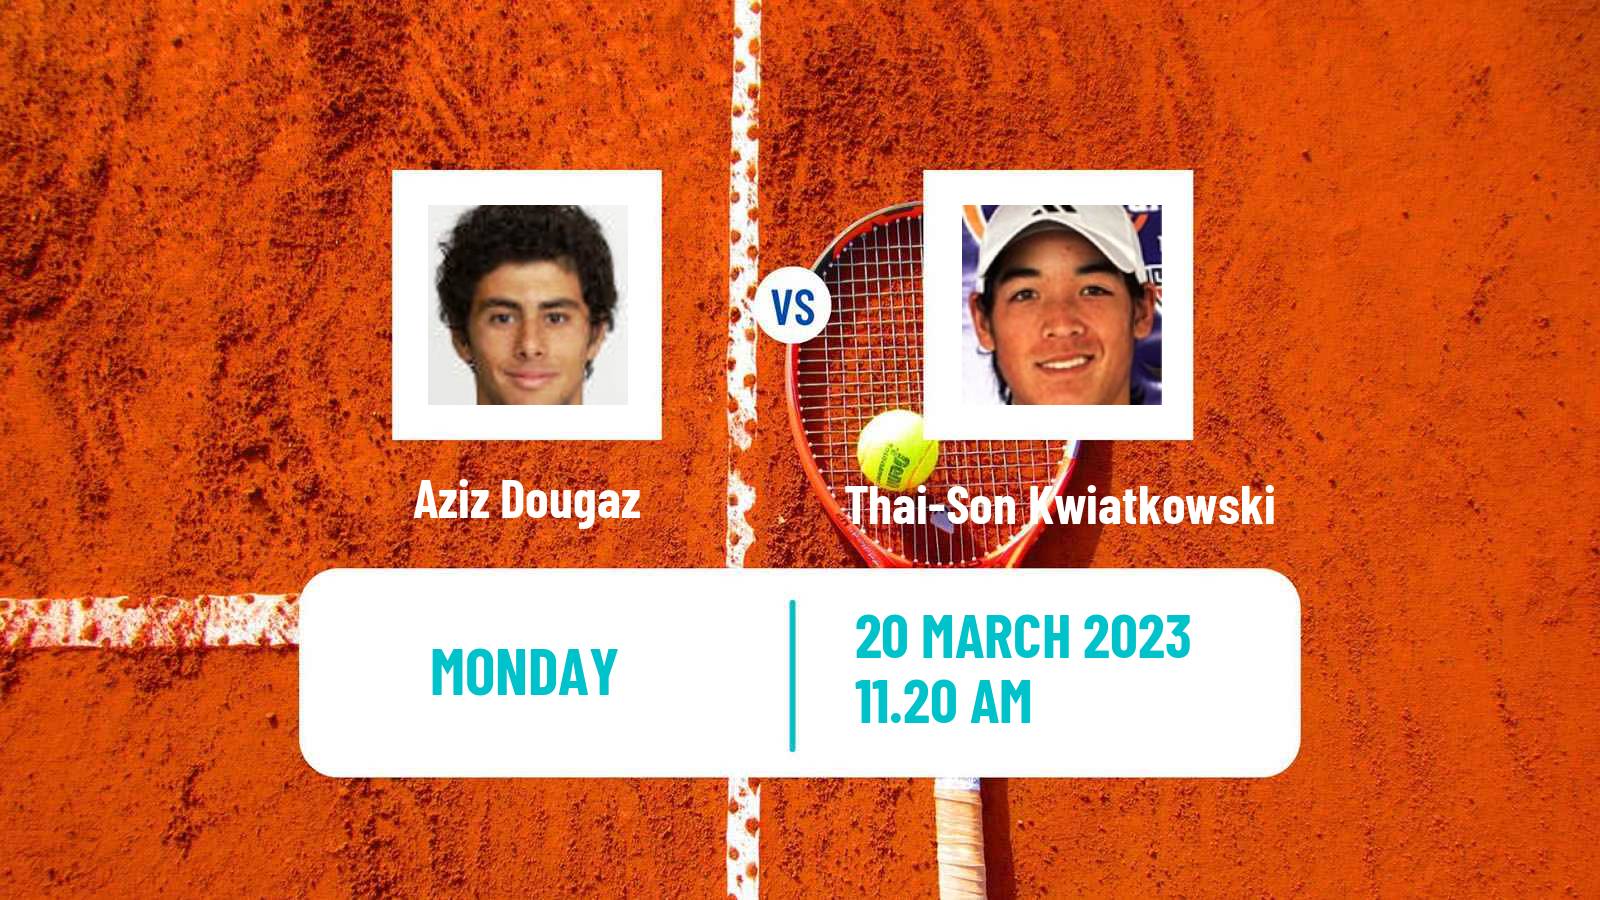 Tennis ATP Challenger Aziz Dougaz - Thai-Son Kwiatkowski